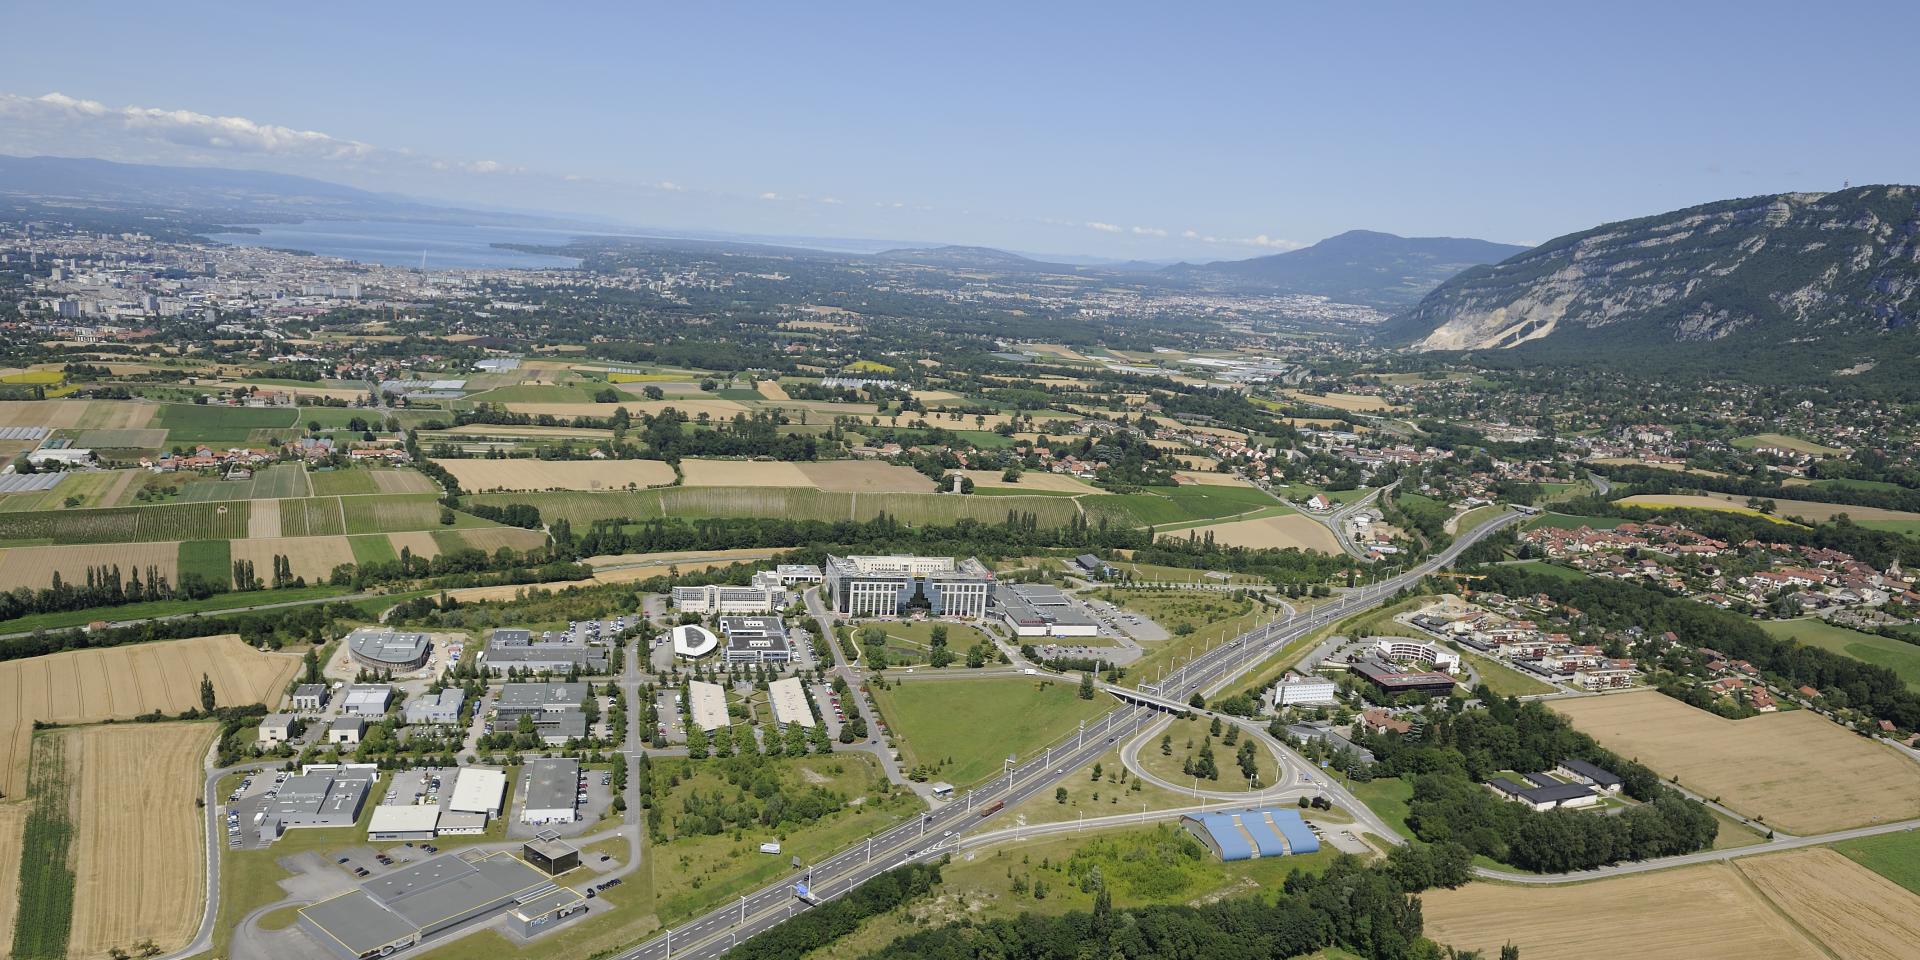 Découvrez pour vos séminaires aux portes de Genève, l'Office de Tourisme Des Monts De Genève. Vous offrant à vos équipes et clients un terrain de jeu d'exception entre montagnes et lac.